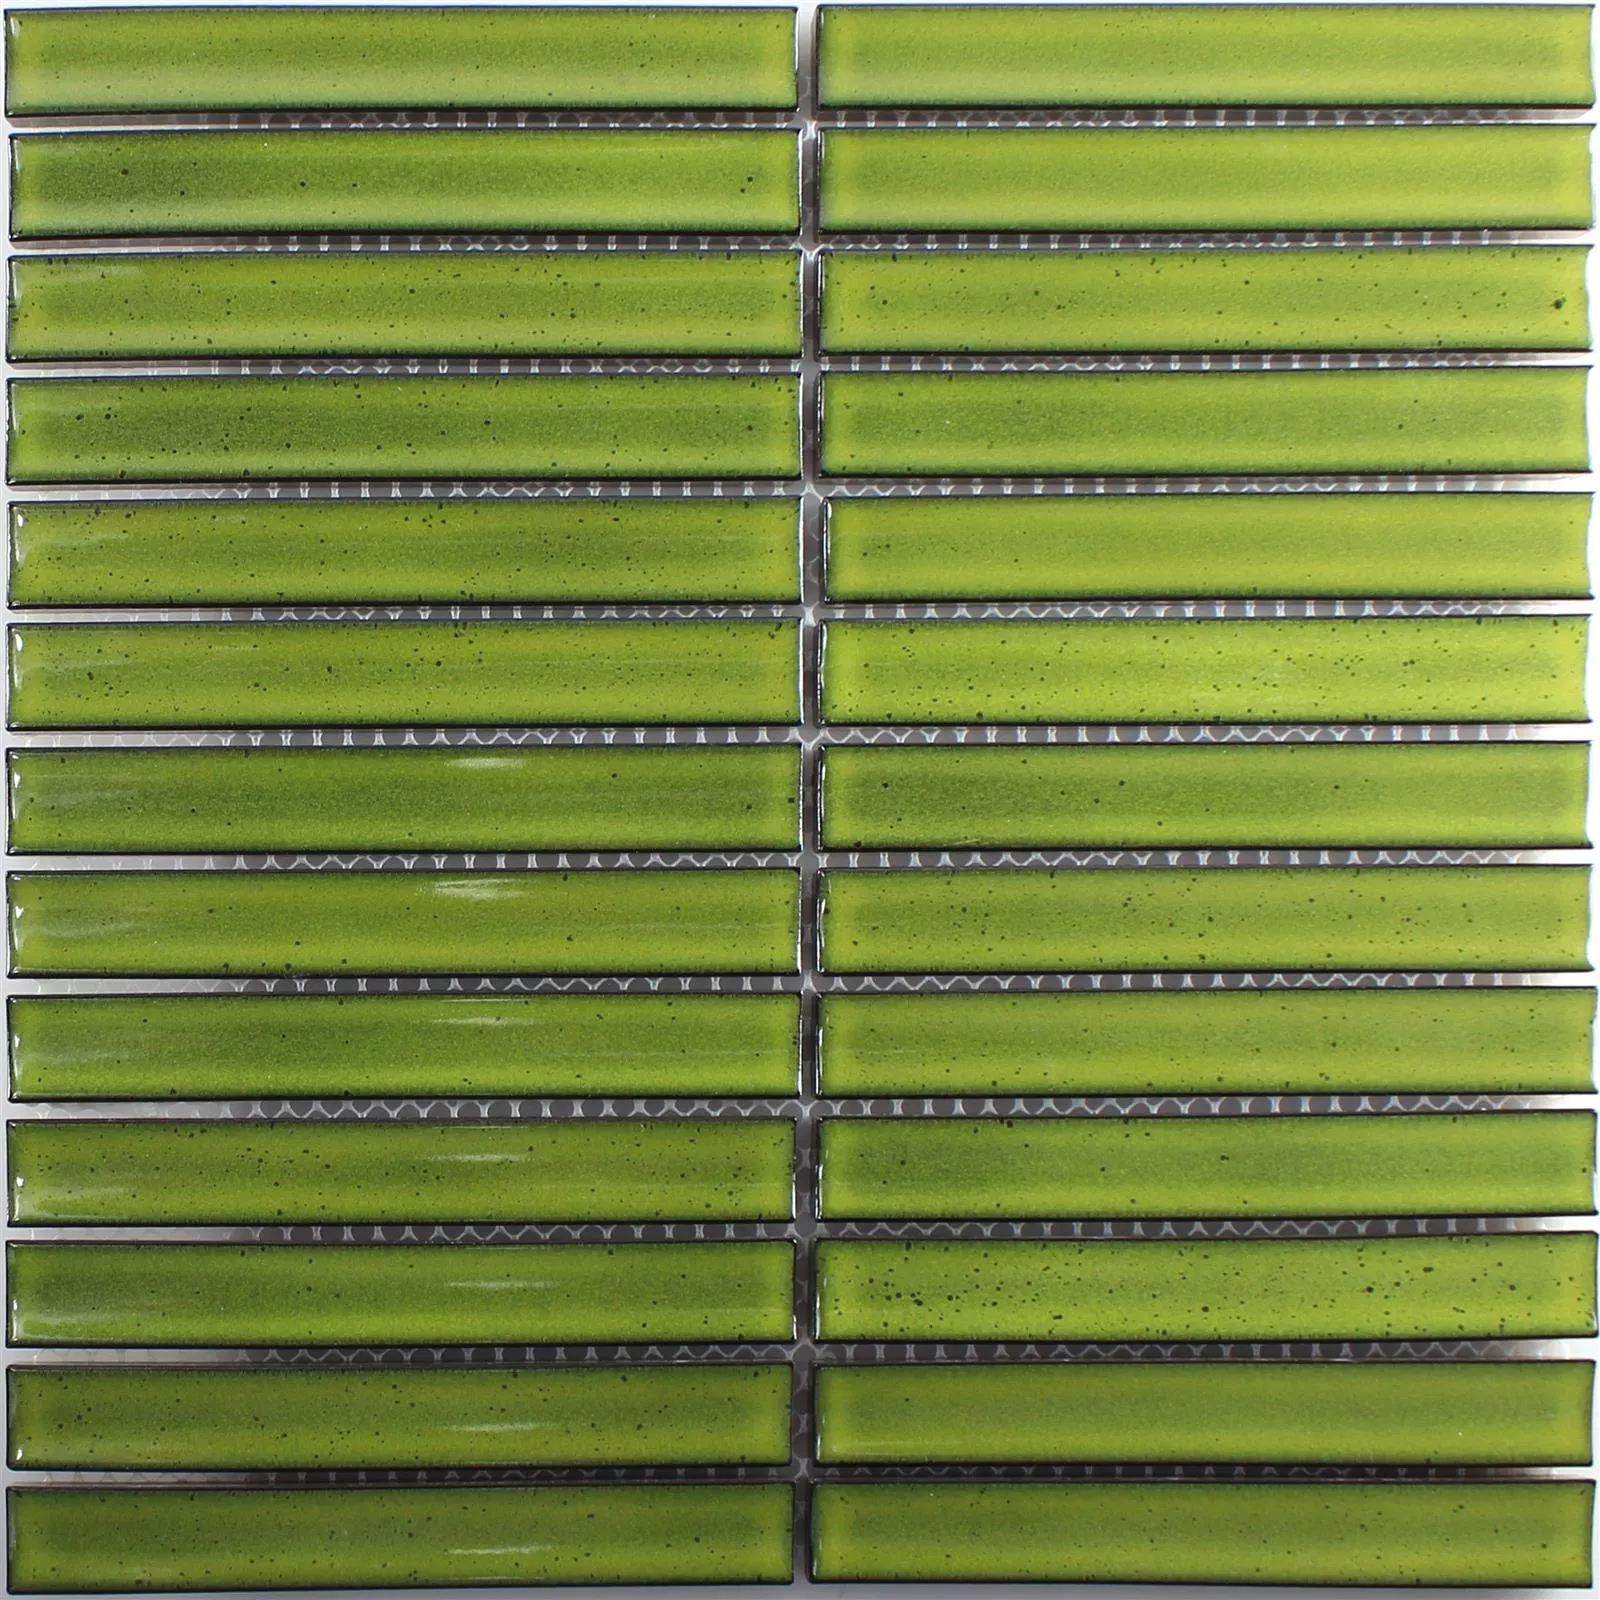 Sample Ceramic Mosaic Tiles Sticks Ontario Green